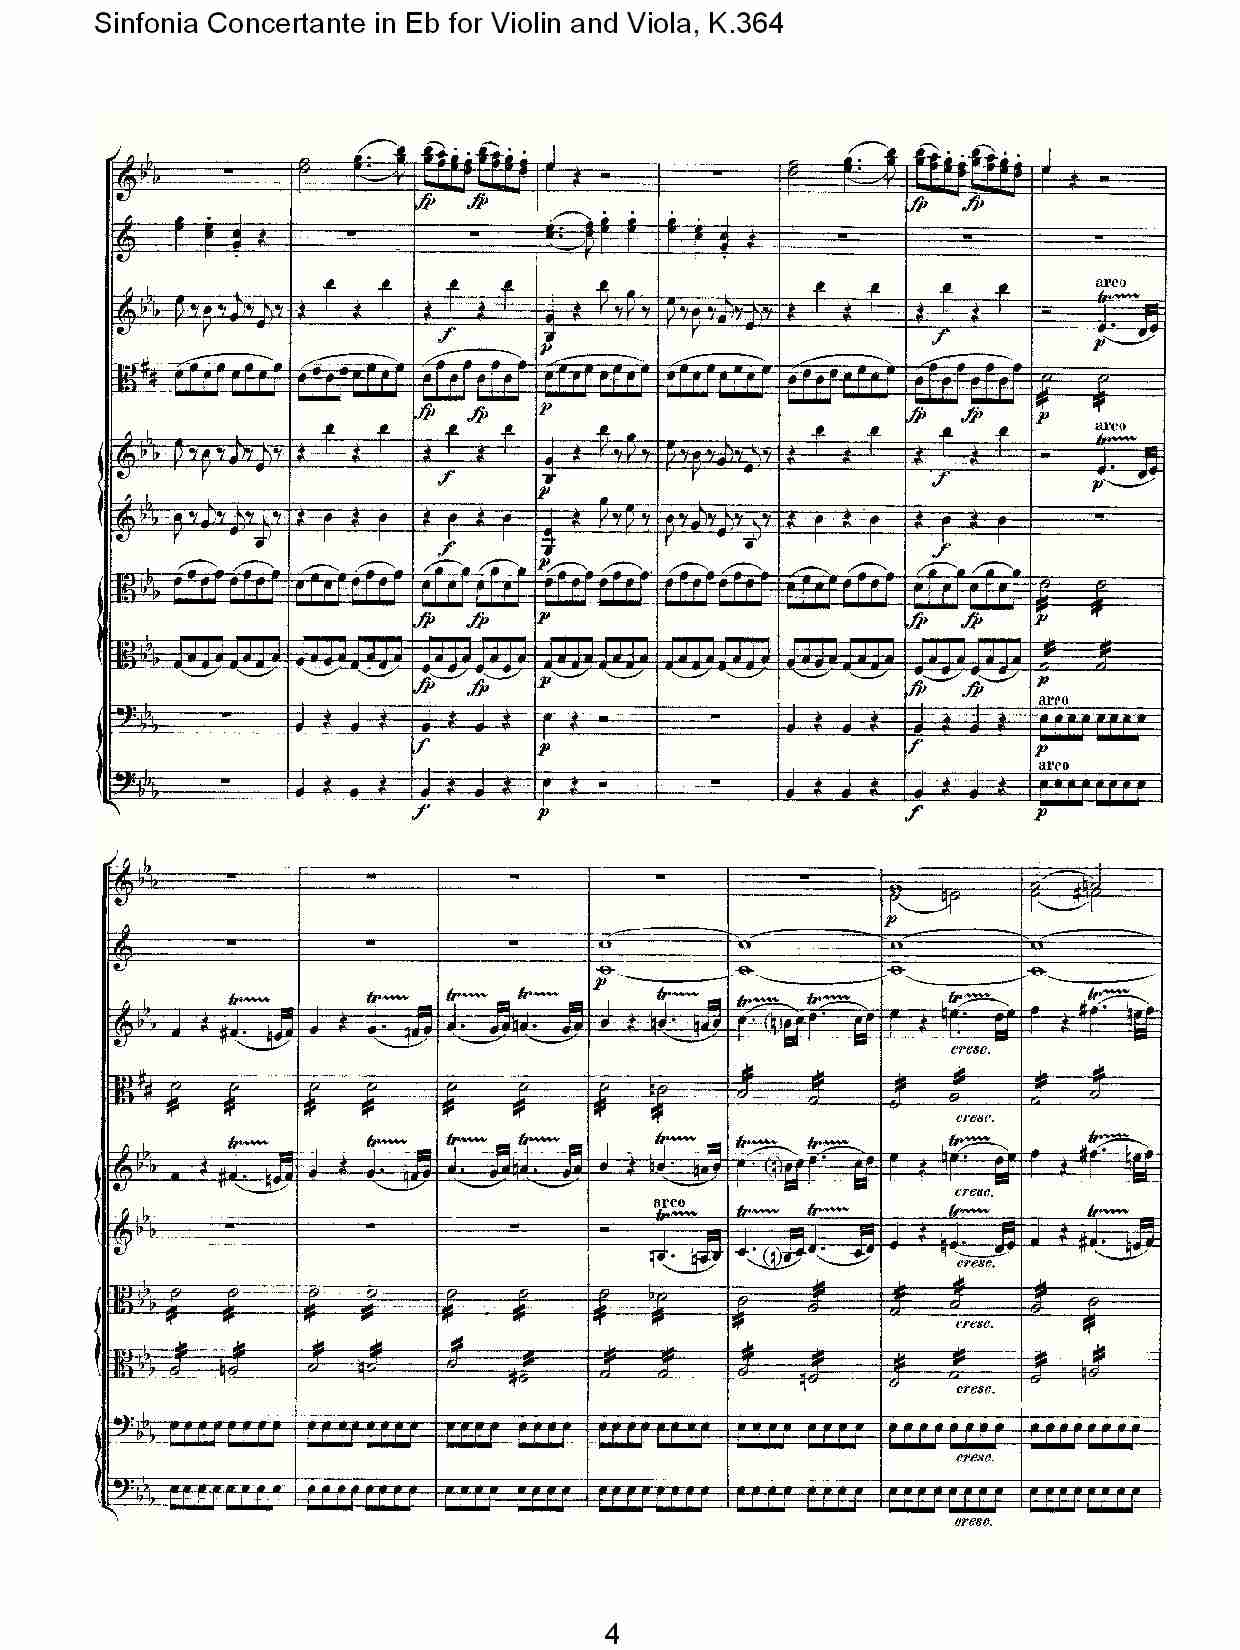 Eb调小提琴与中提琴炫技序曲, K.364（一）总谱（图4）